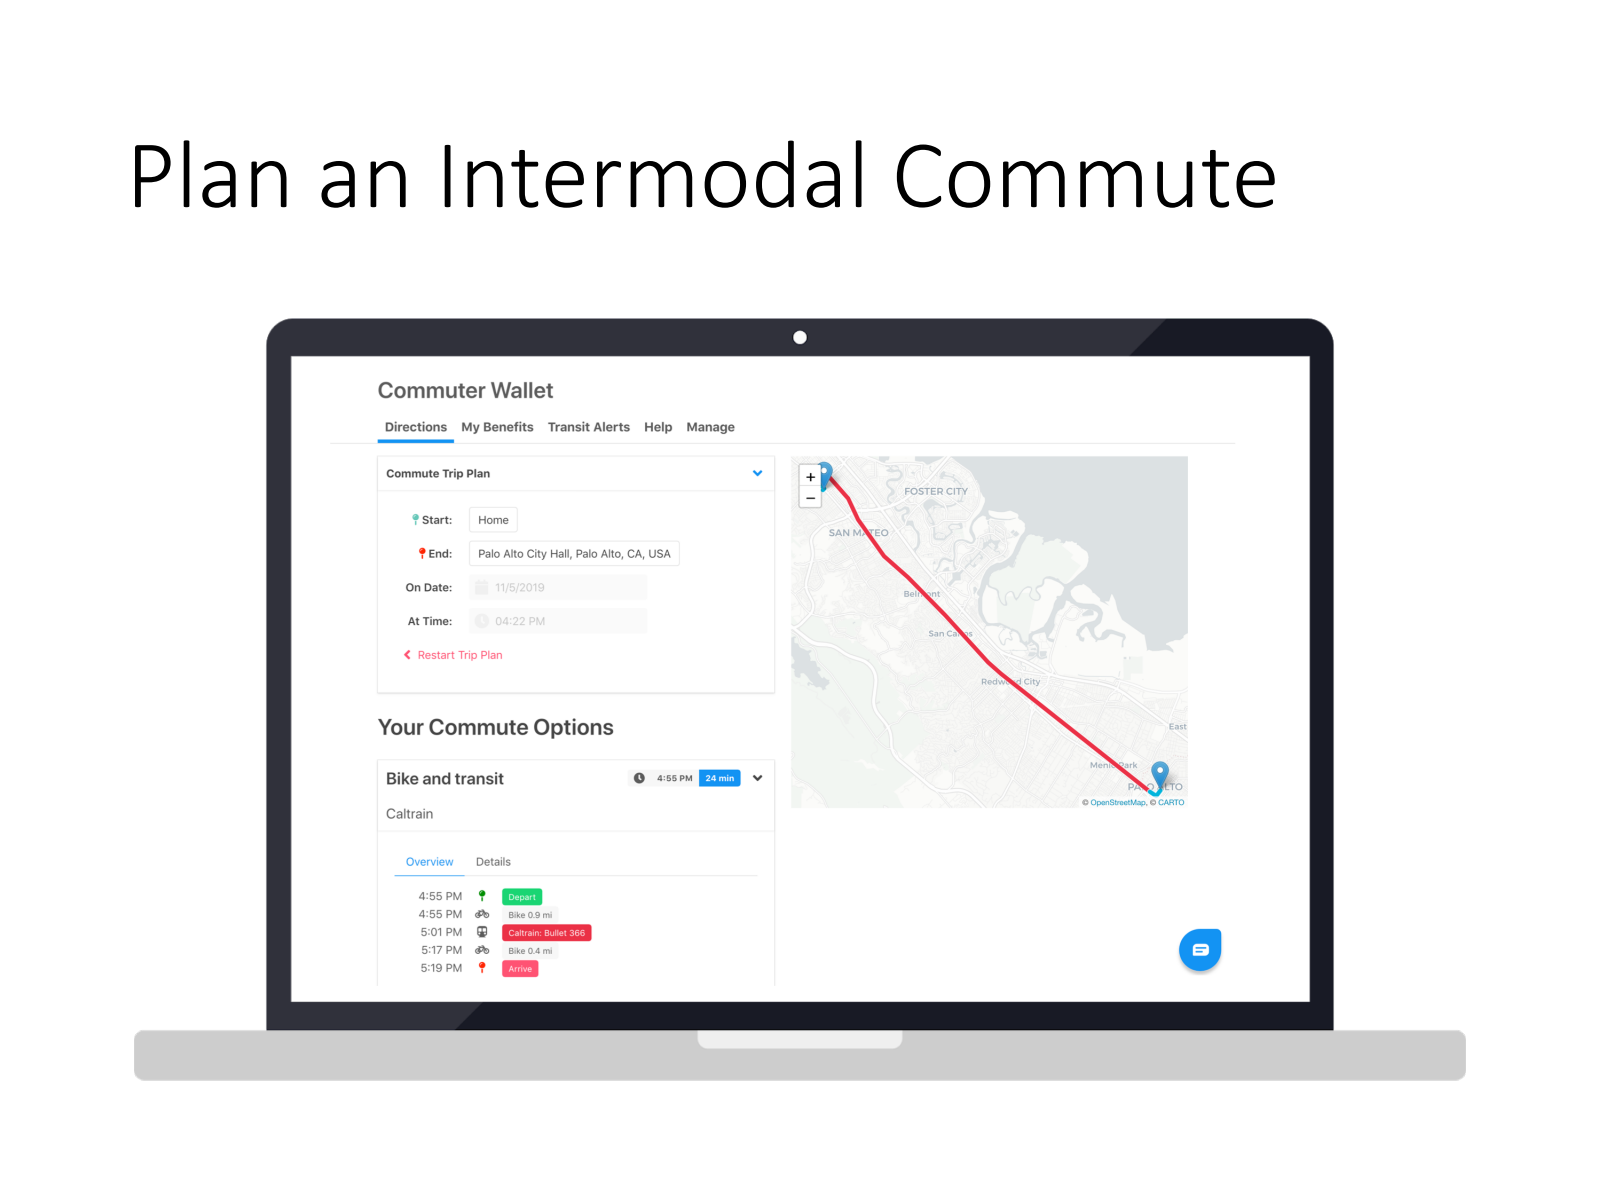 Plan an intermodal commute using Commuter Wallet